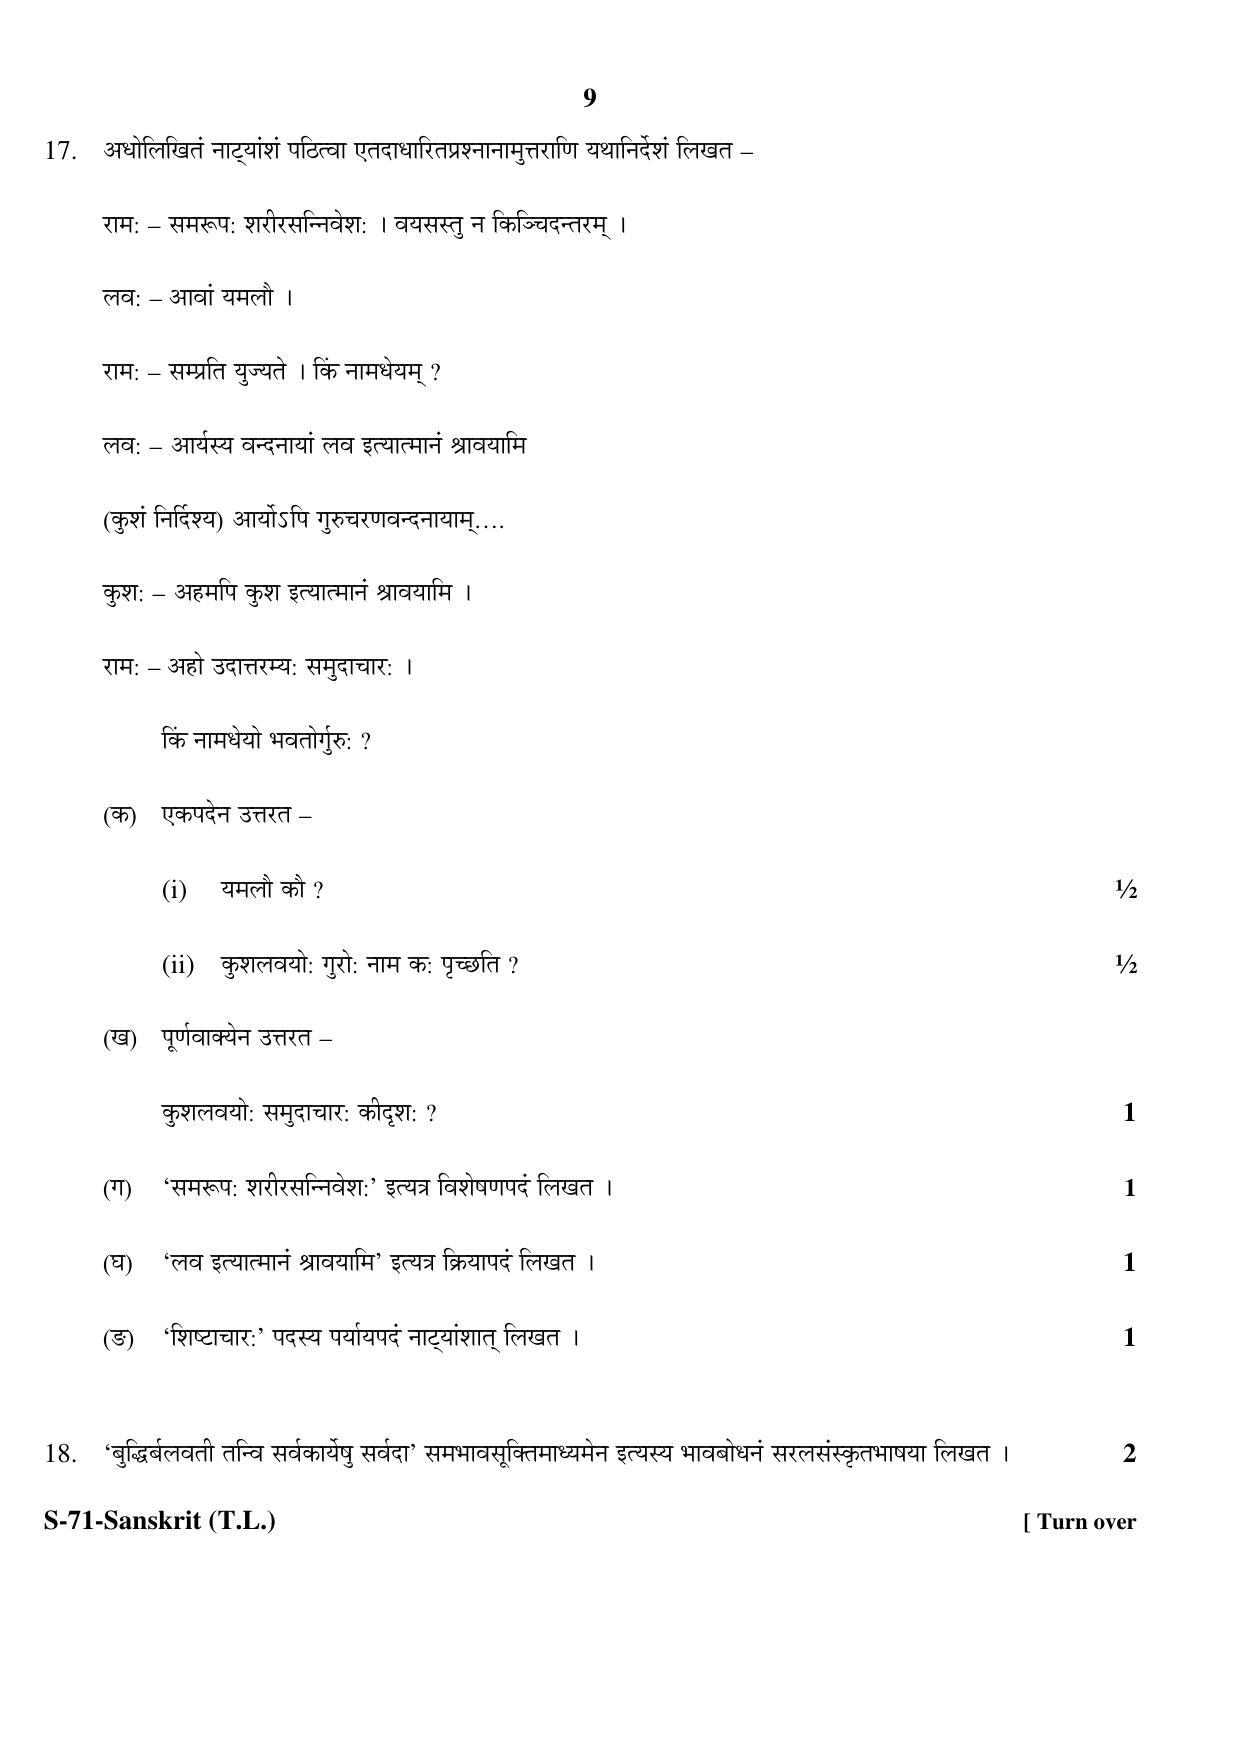 RBSE Class 10 Sanskrit (T.L.) 2017 Question Paper - Page 9